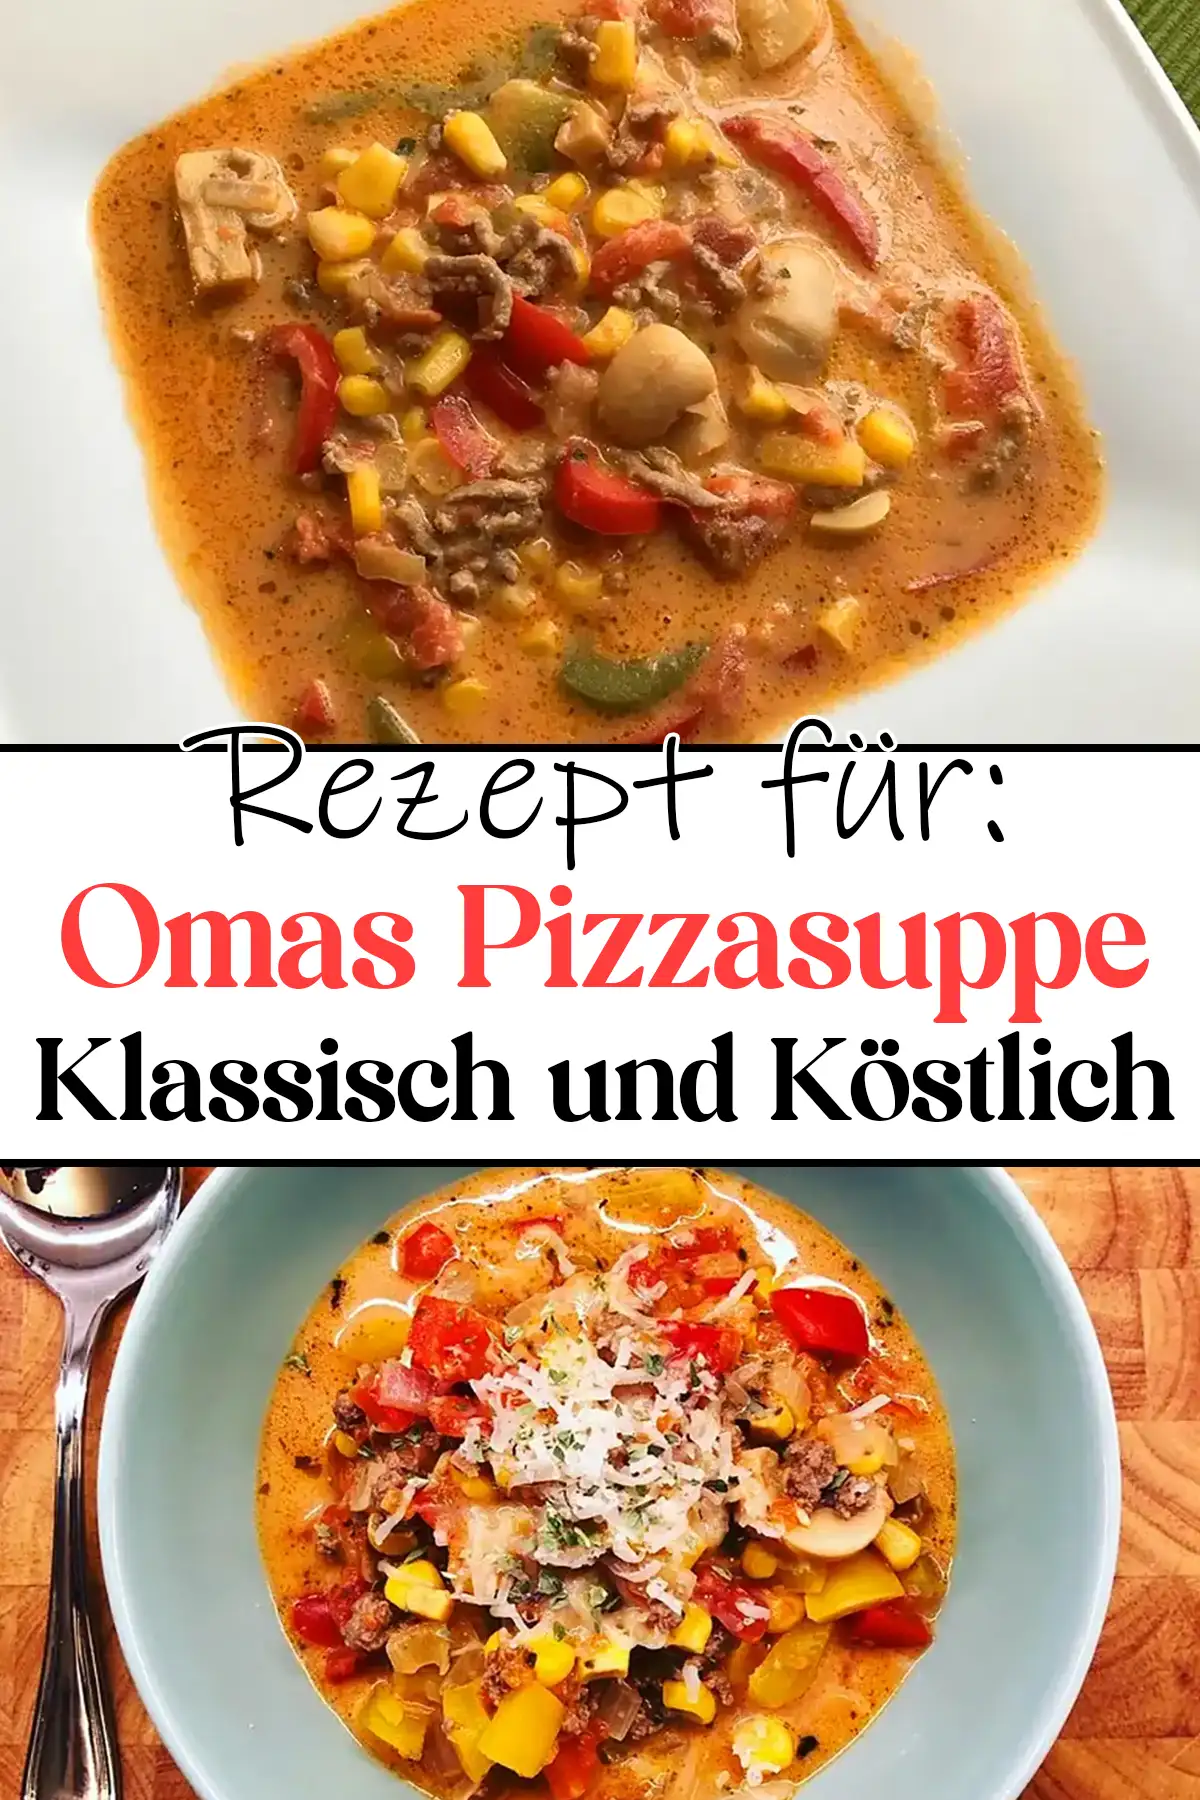 Omas Pizzasuppe Rezept: Klassisch und Köstlich